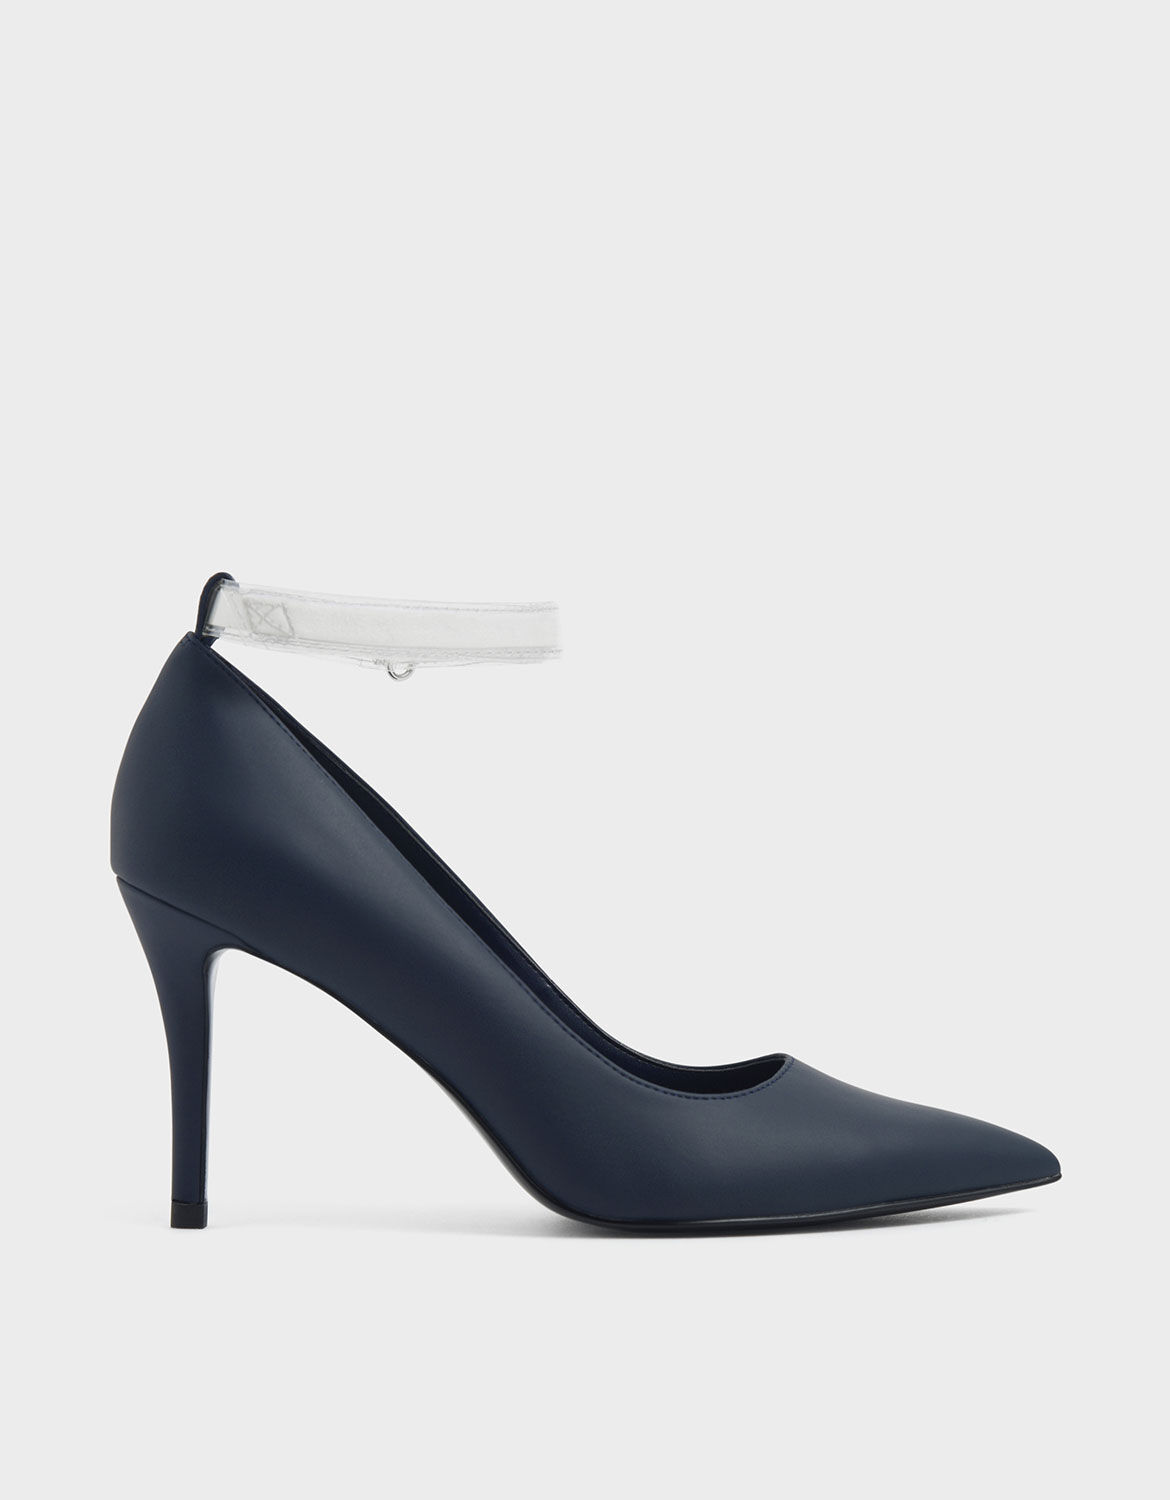 dark blue stiletto heels